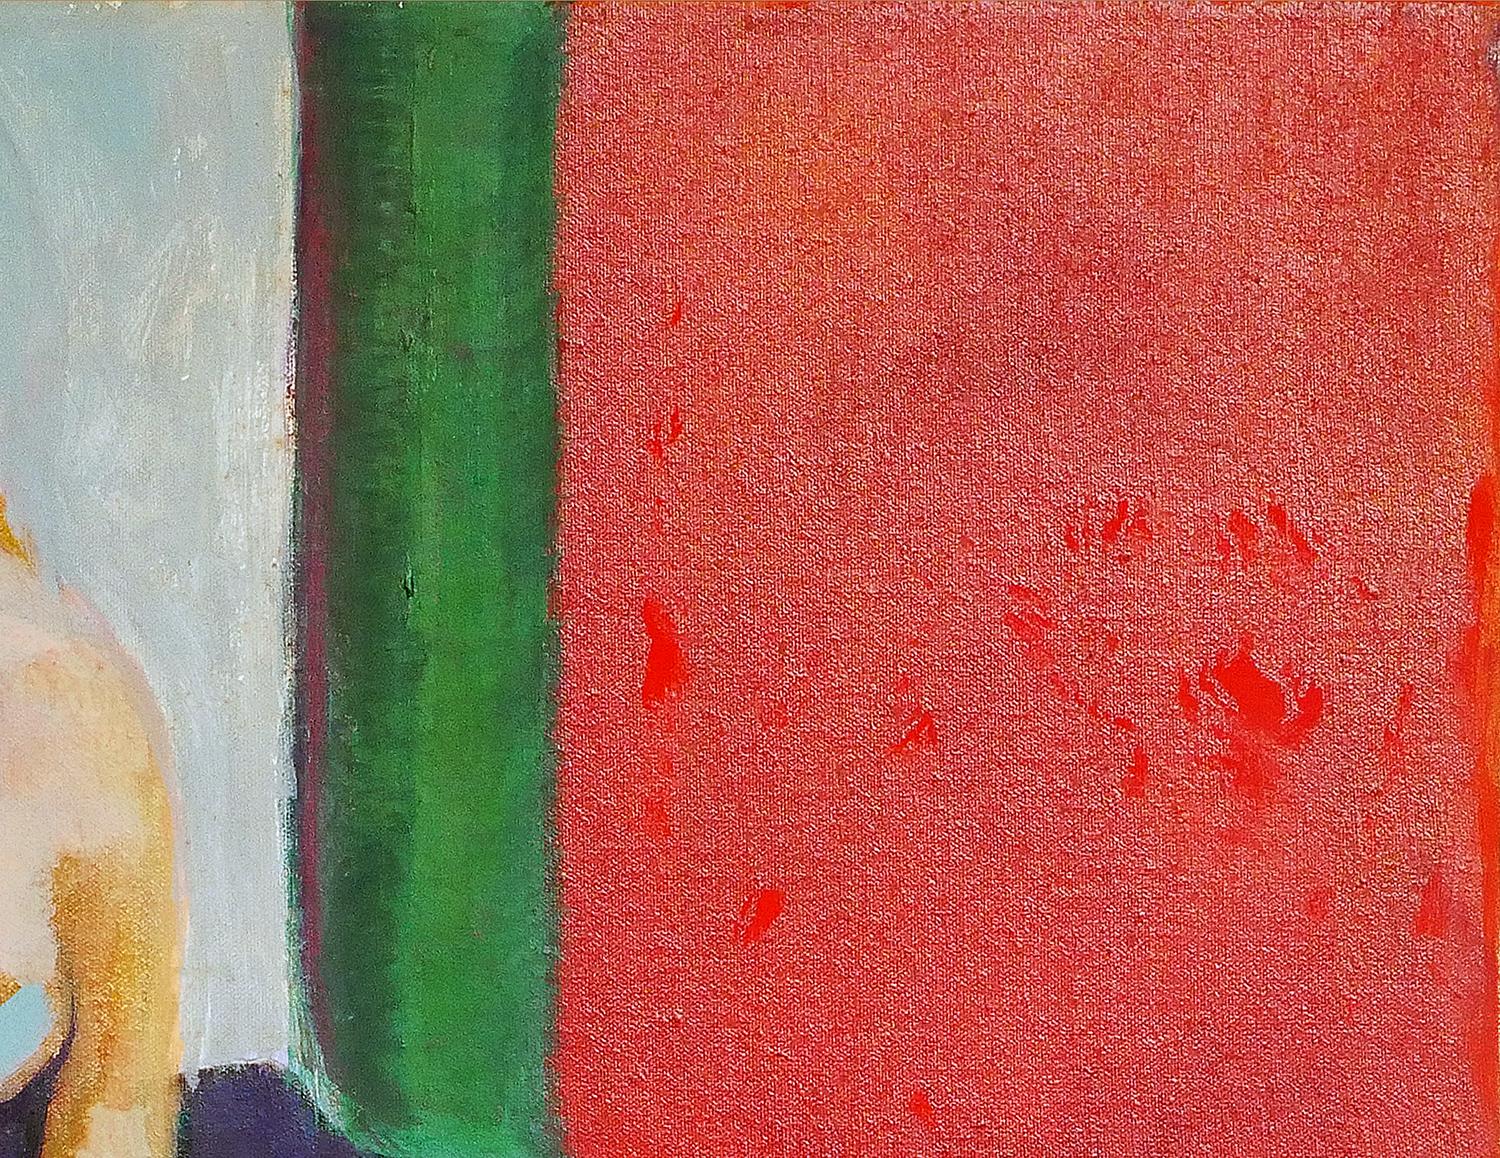 Moderne abstrakte figurative Malerei der Künstlerin Margaret Nobler aus Houston, TX. Das Werk zeigt in der Mitte einen sitzenden weiblichen Akt vor einem kräftigen roten und grünen Hintergrund. Derzeit ungerahmt, aber Optionen sind verfügbar.